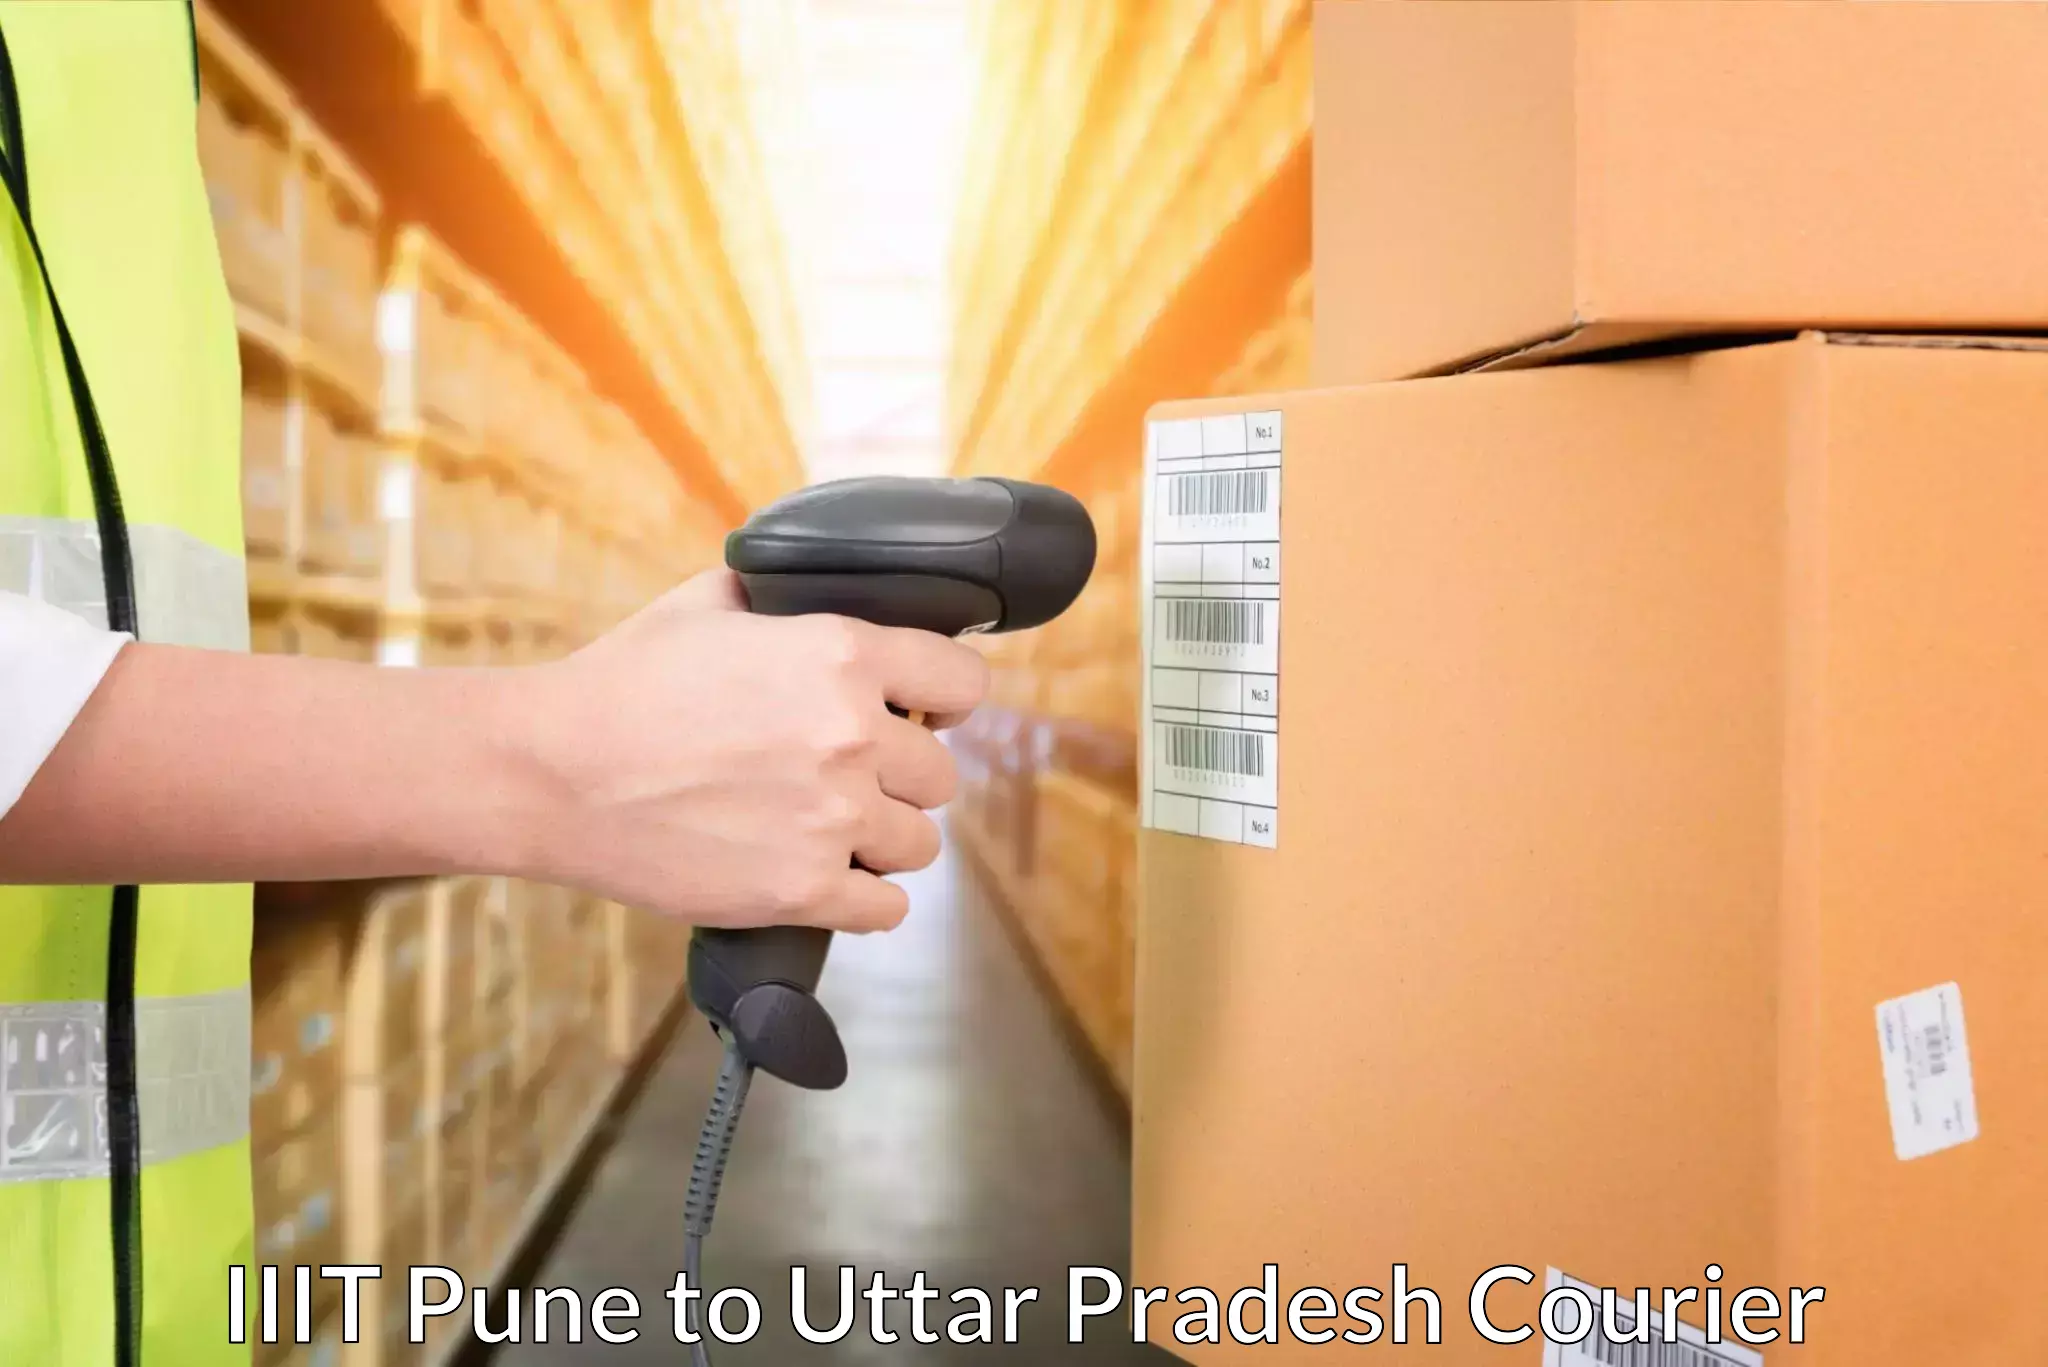 Doorstep delivery service IIIT Pune to Uttar Pradesh